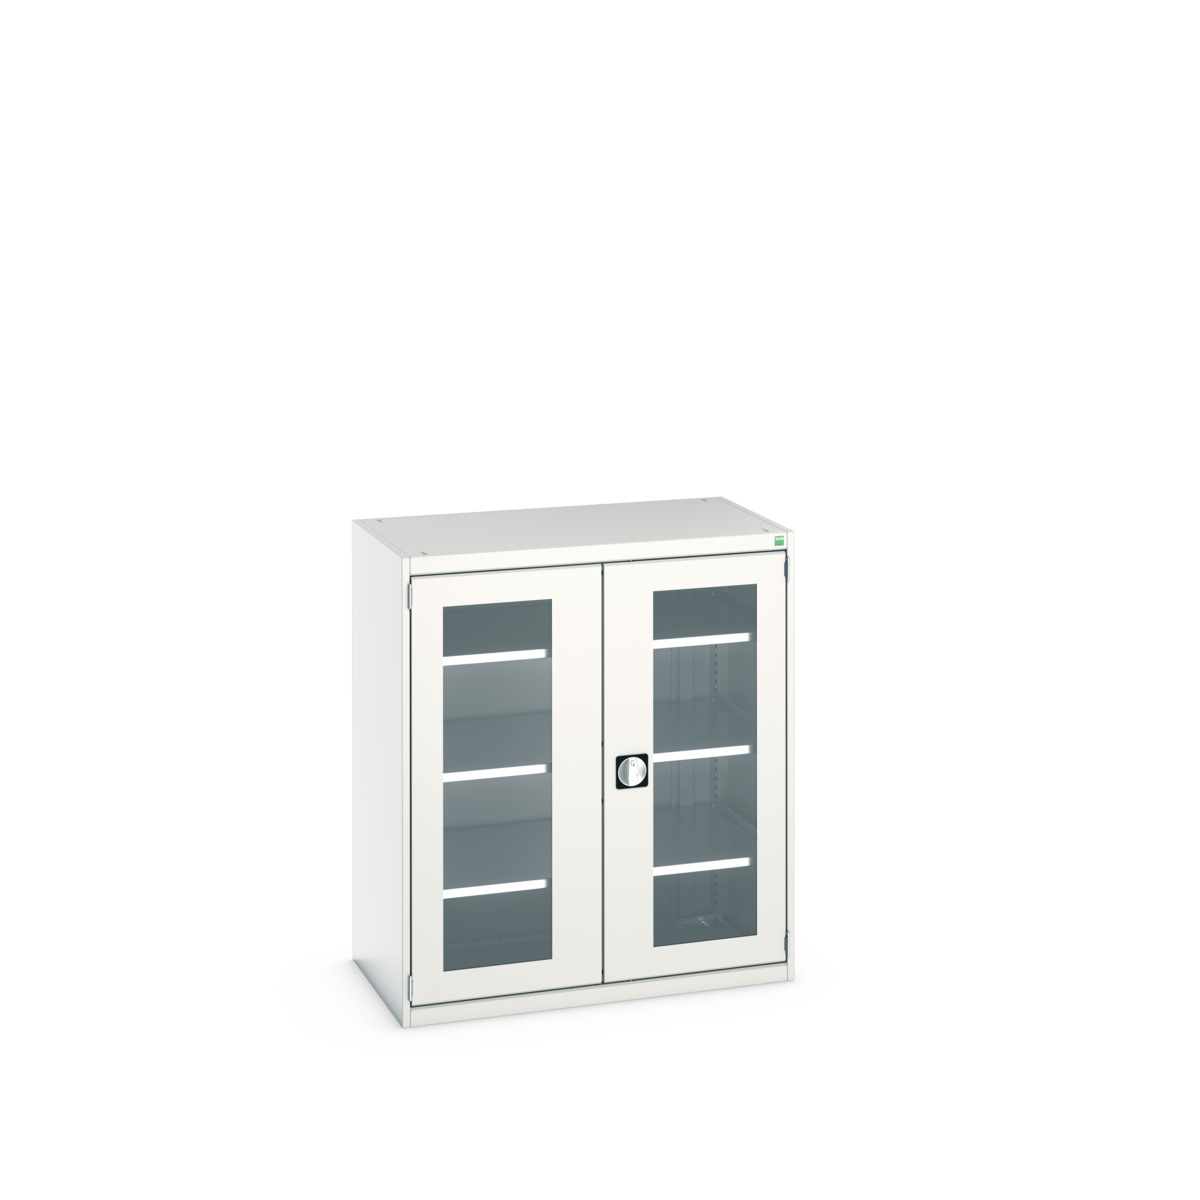 40021131.16V - cubio cupboard